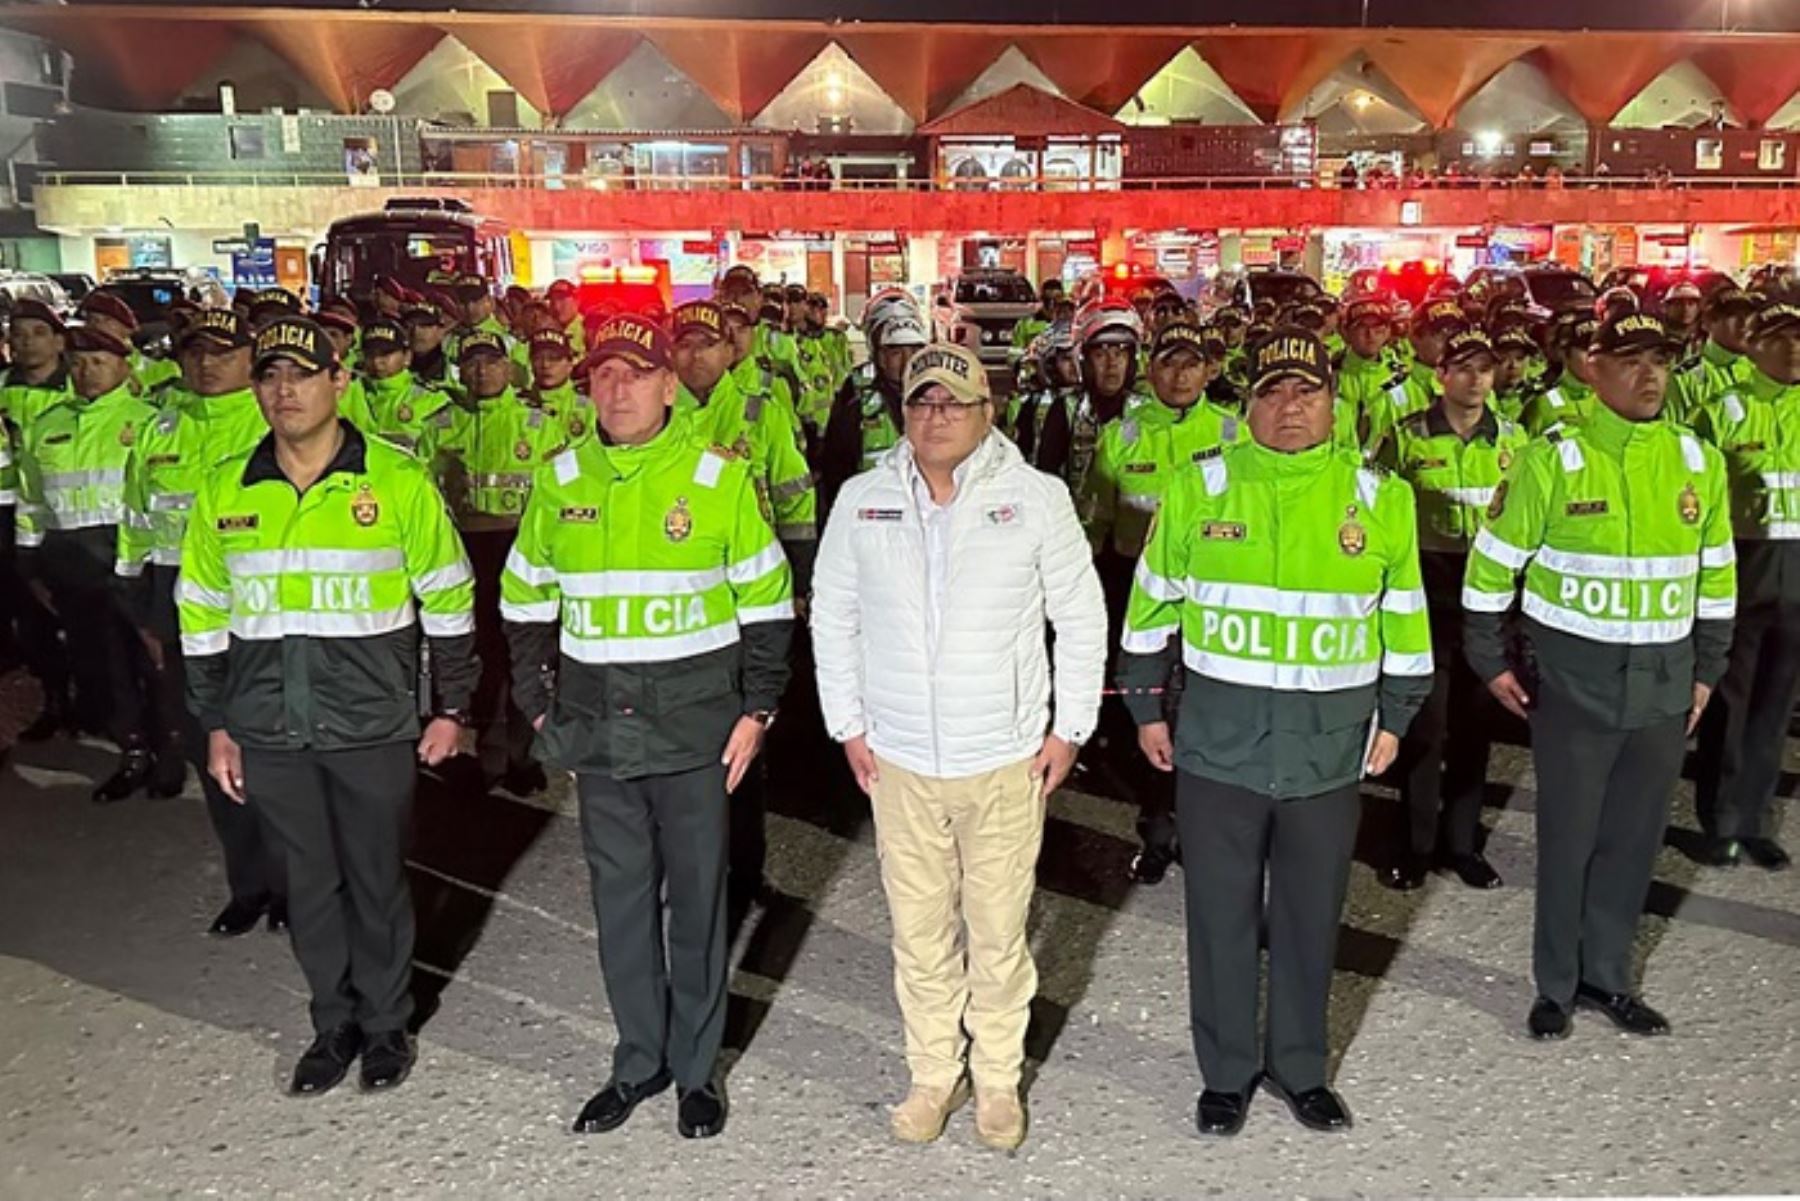 Operativo implicó el despliegue de más de 350 efectivos de distintas unidades policiales y comisarías de Arequipa, así como de 15 camionetas y más de 60 motocicletas.